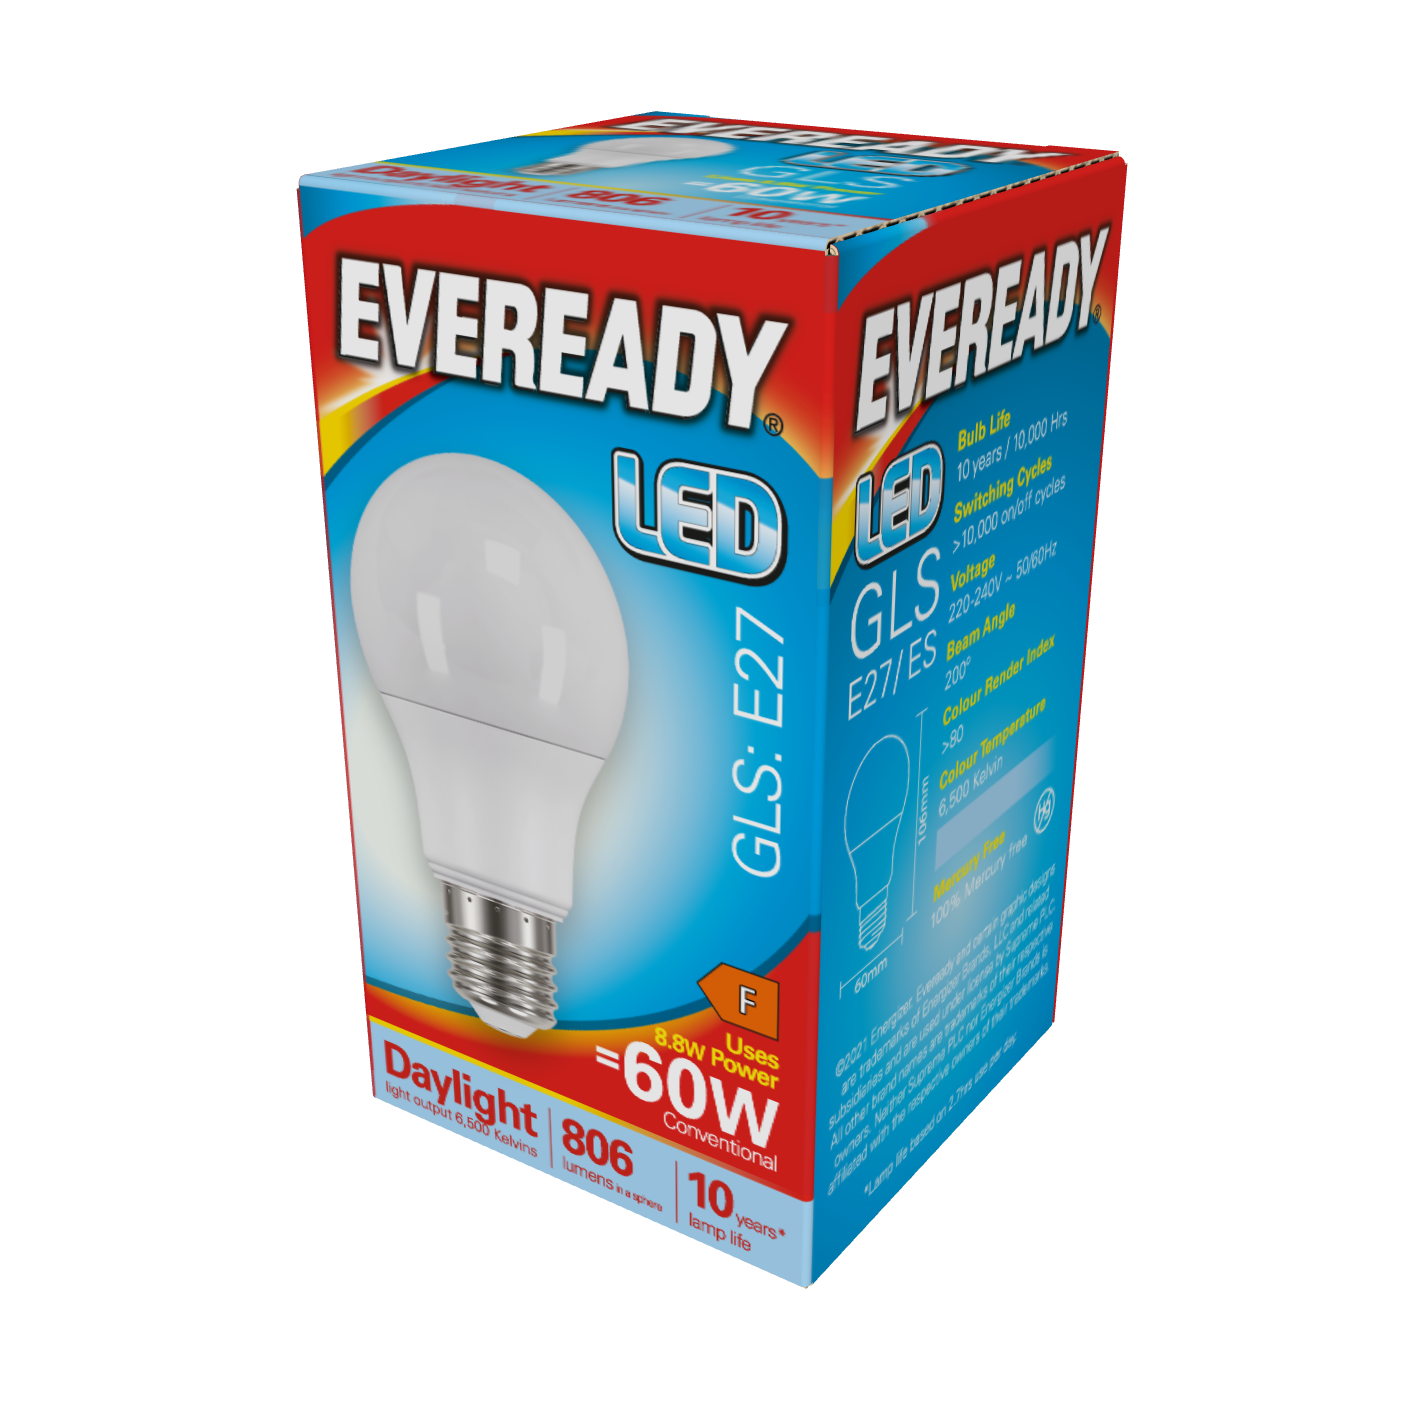 Eveready LED GLS E27 (ES) 806lm 8,8W 6.500K (Tageslicht), Packung mit 1 Stück